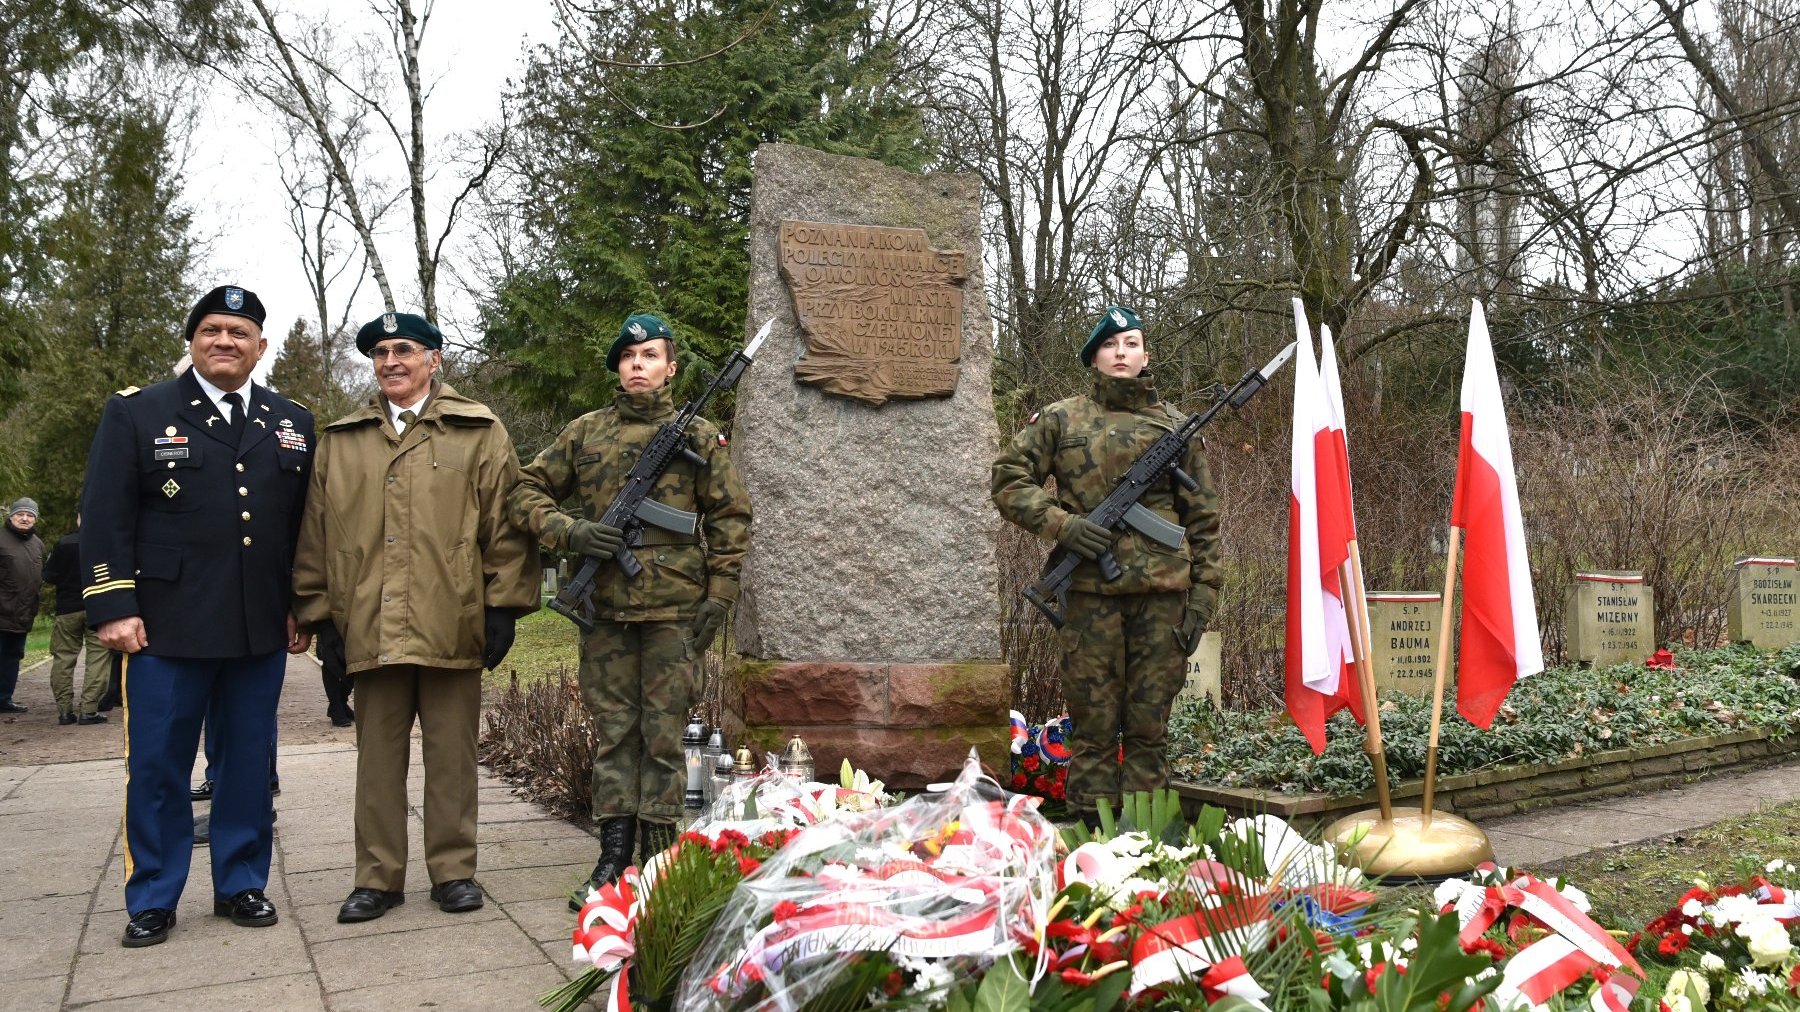 Zdjęcie przedstawia pomnik pod kórym leżą kwiaty. Przed pomnikiem stoją żołnierze.